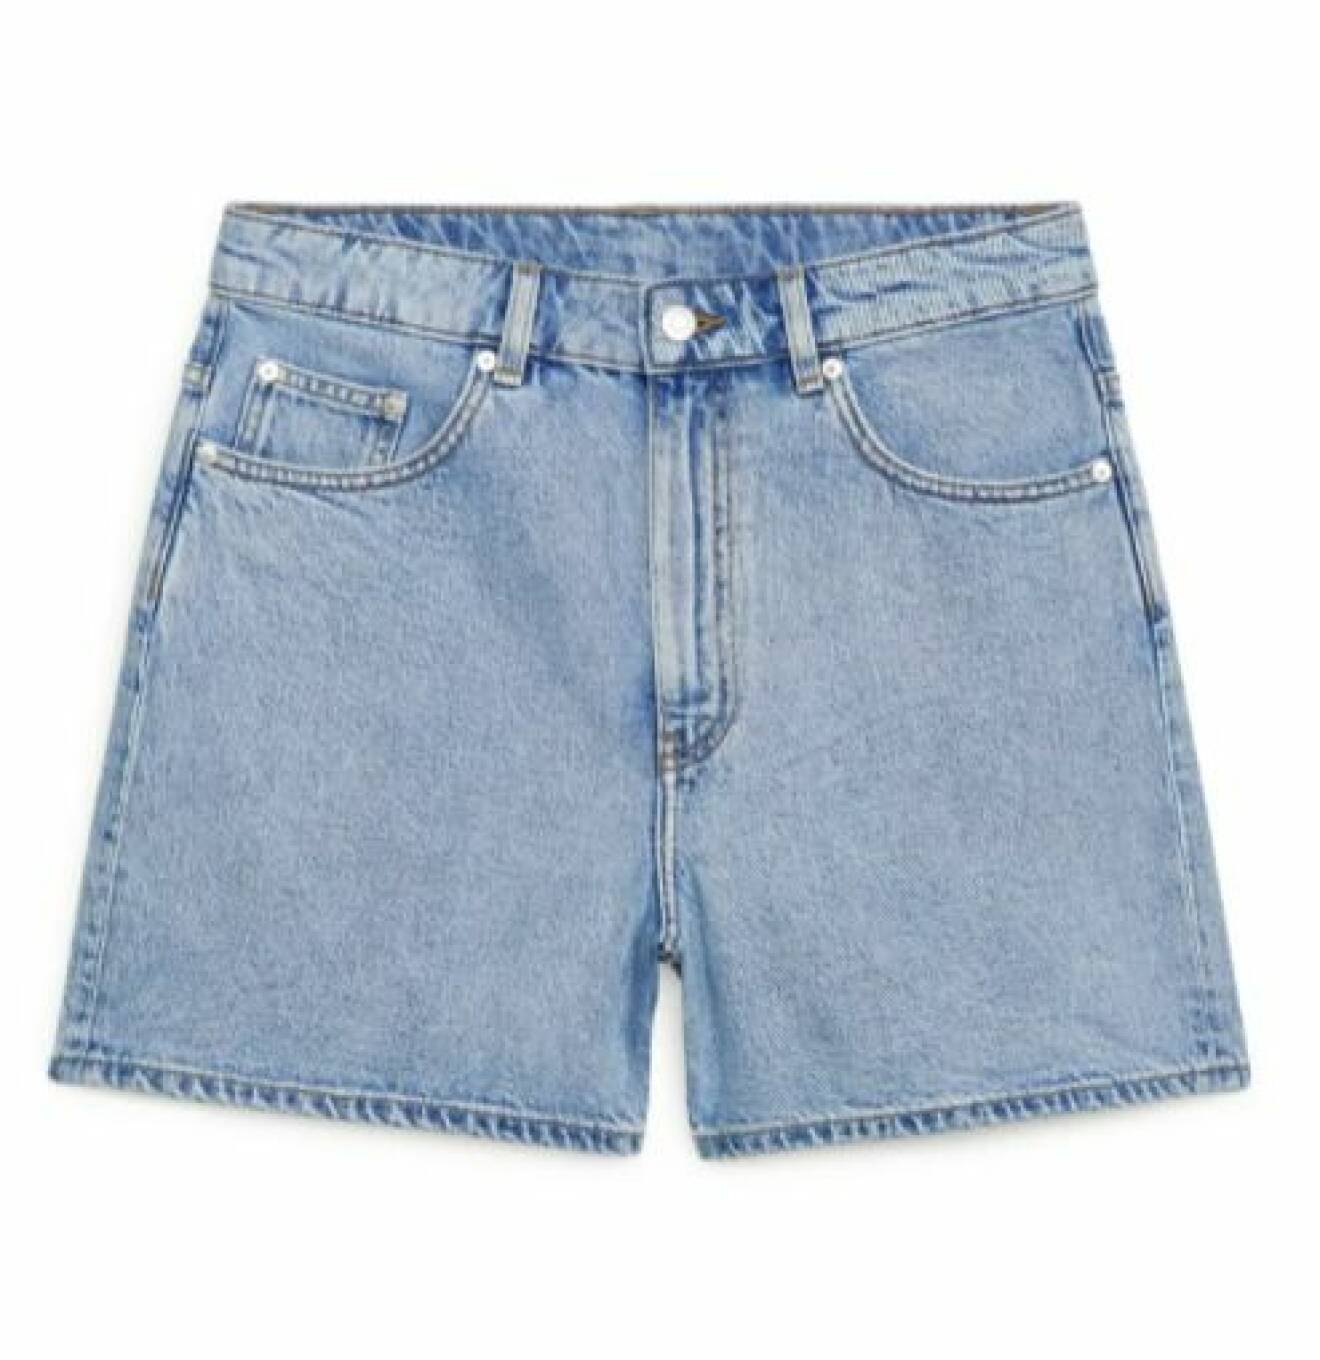 Ljusblå jeansshorts i kort modell. Jeansshorts från Arket.